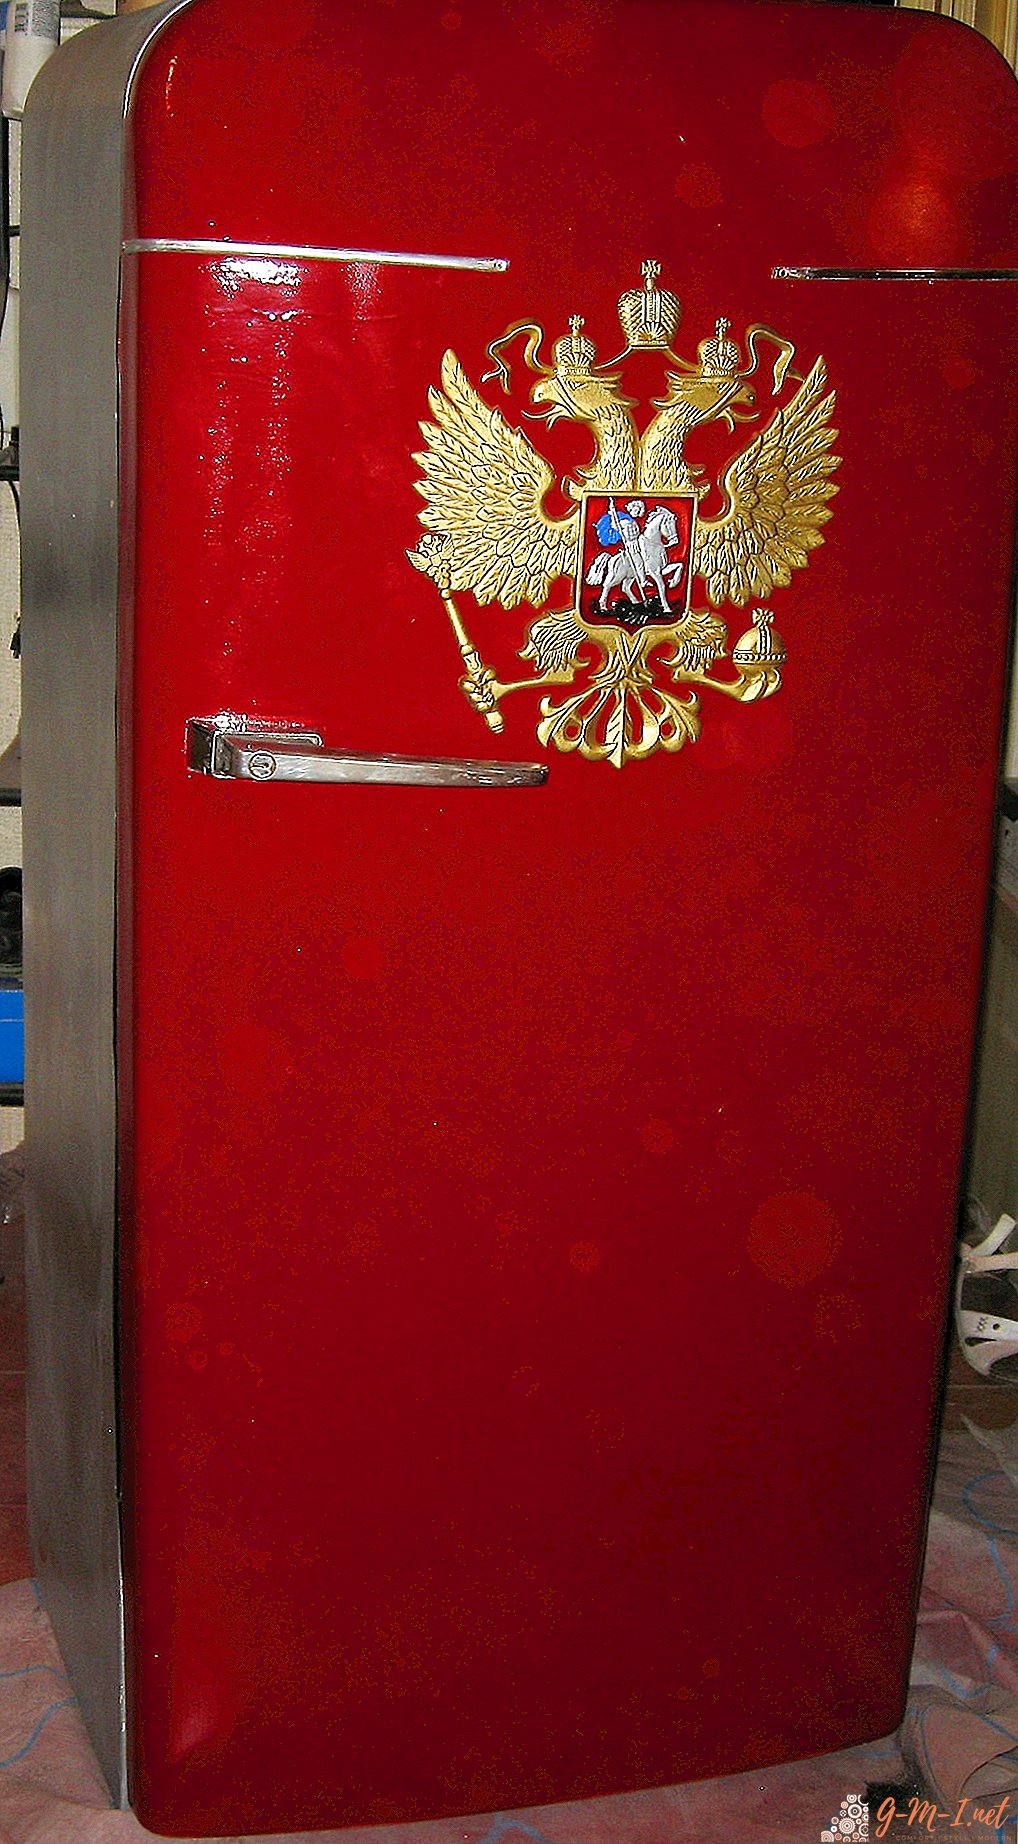 โซเวียตหมายถึงความน่าเชื่อถือ: ตู้เย็น ZIL ช่วยฟิเดลคาสโตรได้อย่างไร